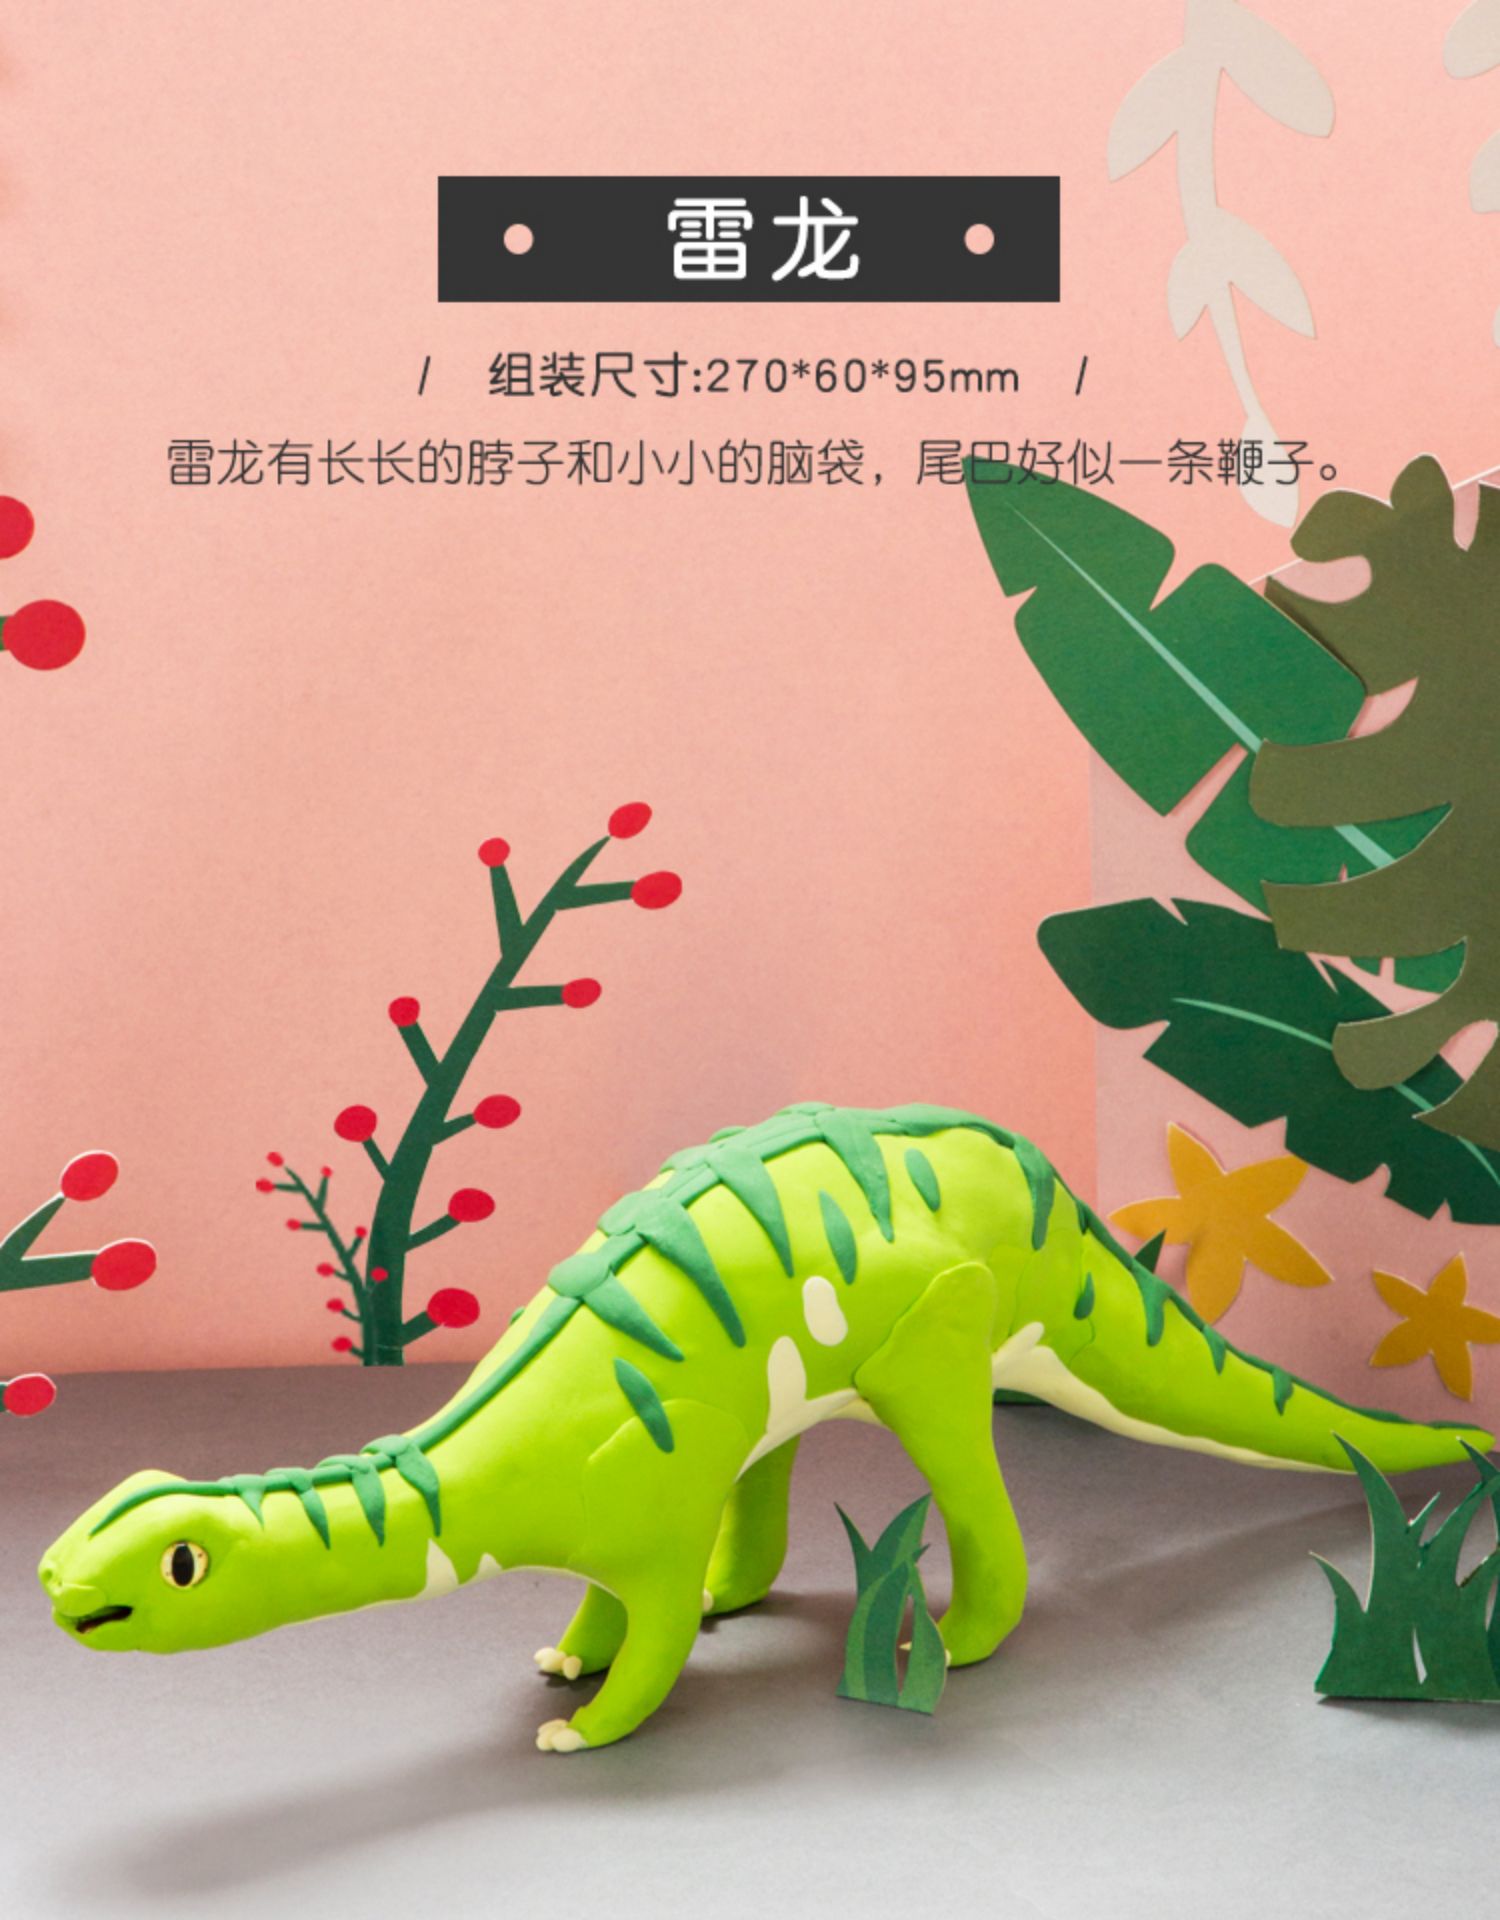 超级新品 超轻粘土儿童手工制作侏罗纪恐龙模具diy黏土橡皮泥拼搭玩具